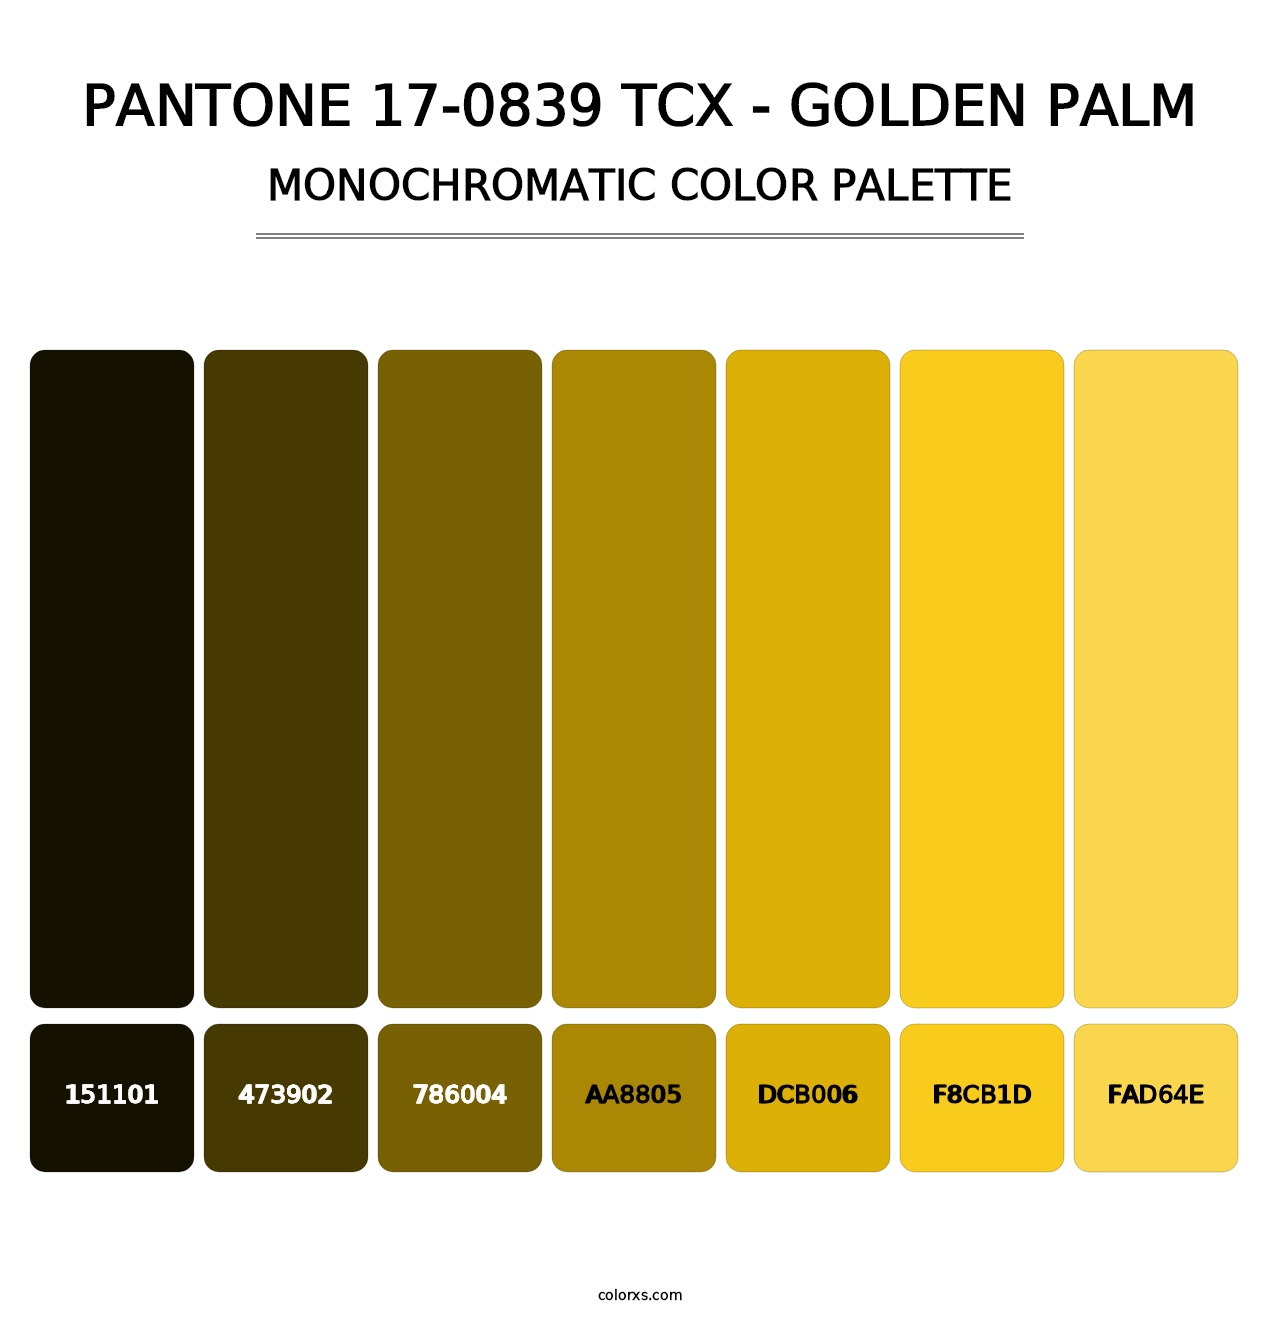 PANTONE 17-0839 TCX - Golden Palm - Monochromatic Color Palette